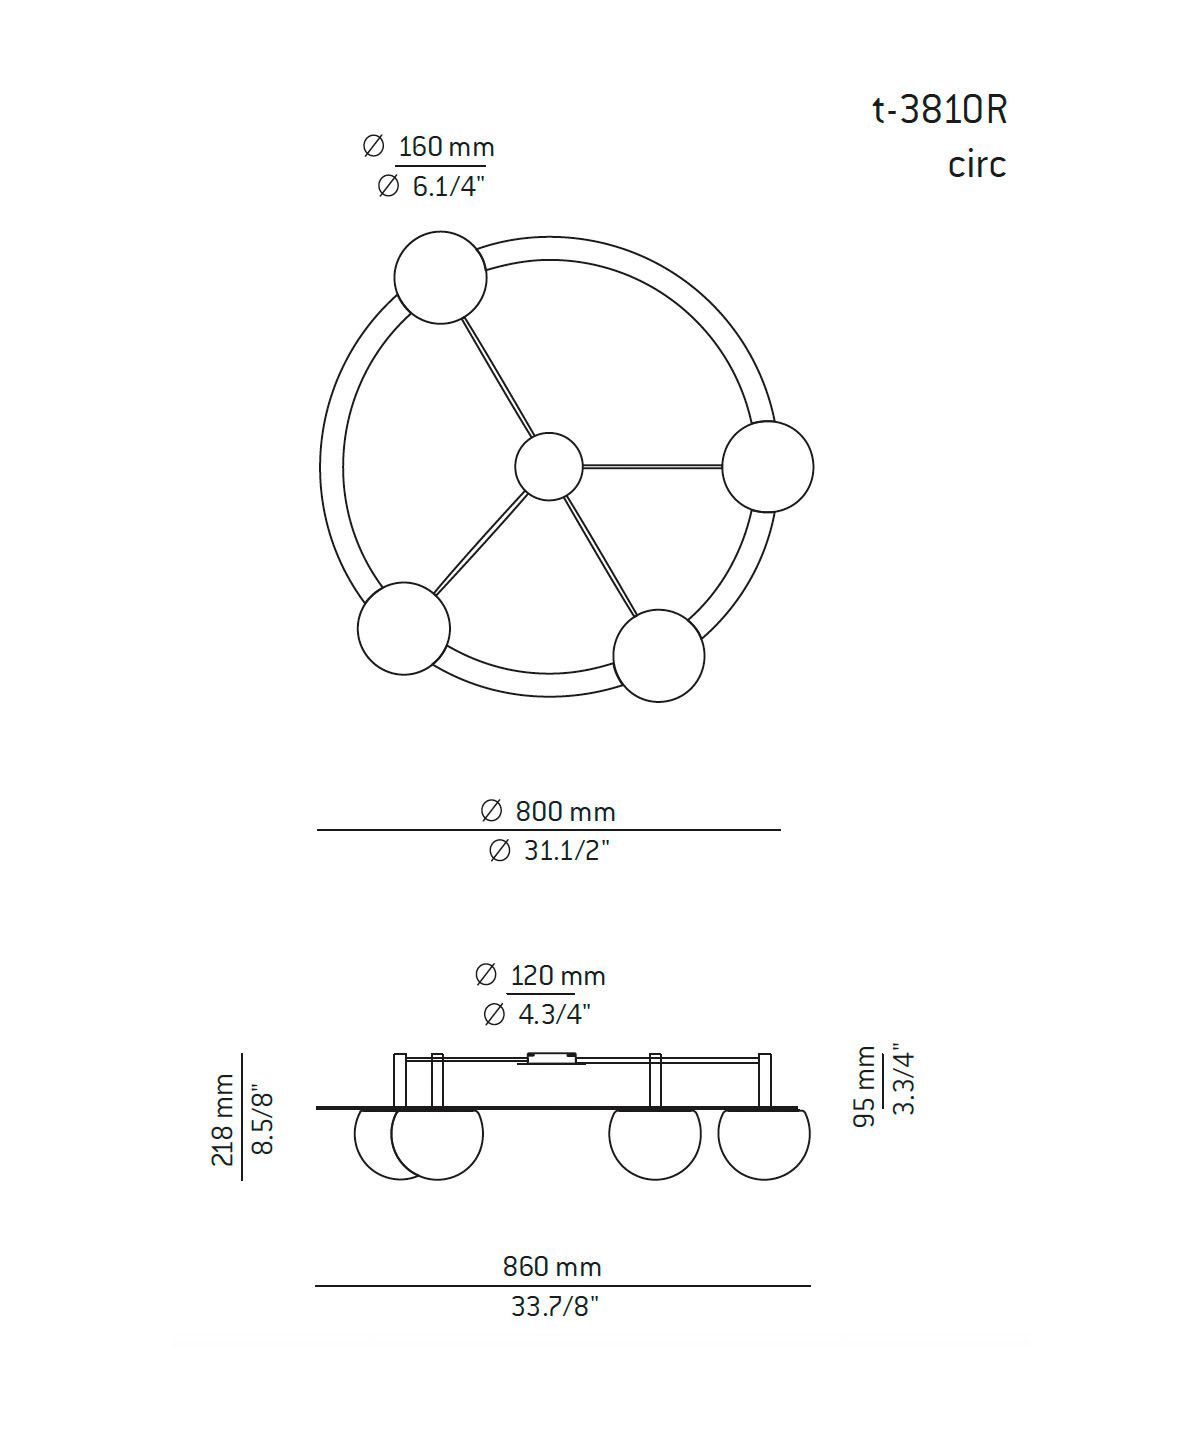 Medidas Circ modelo t-3810R de techo de Estiluz